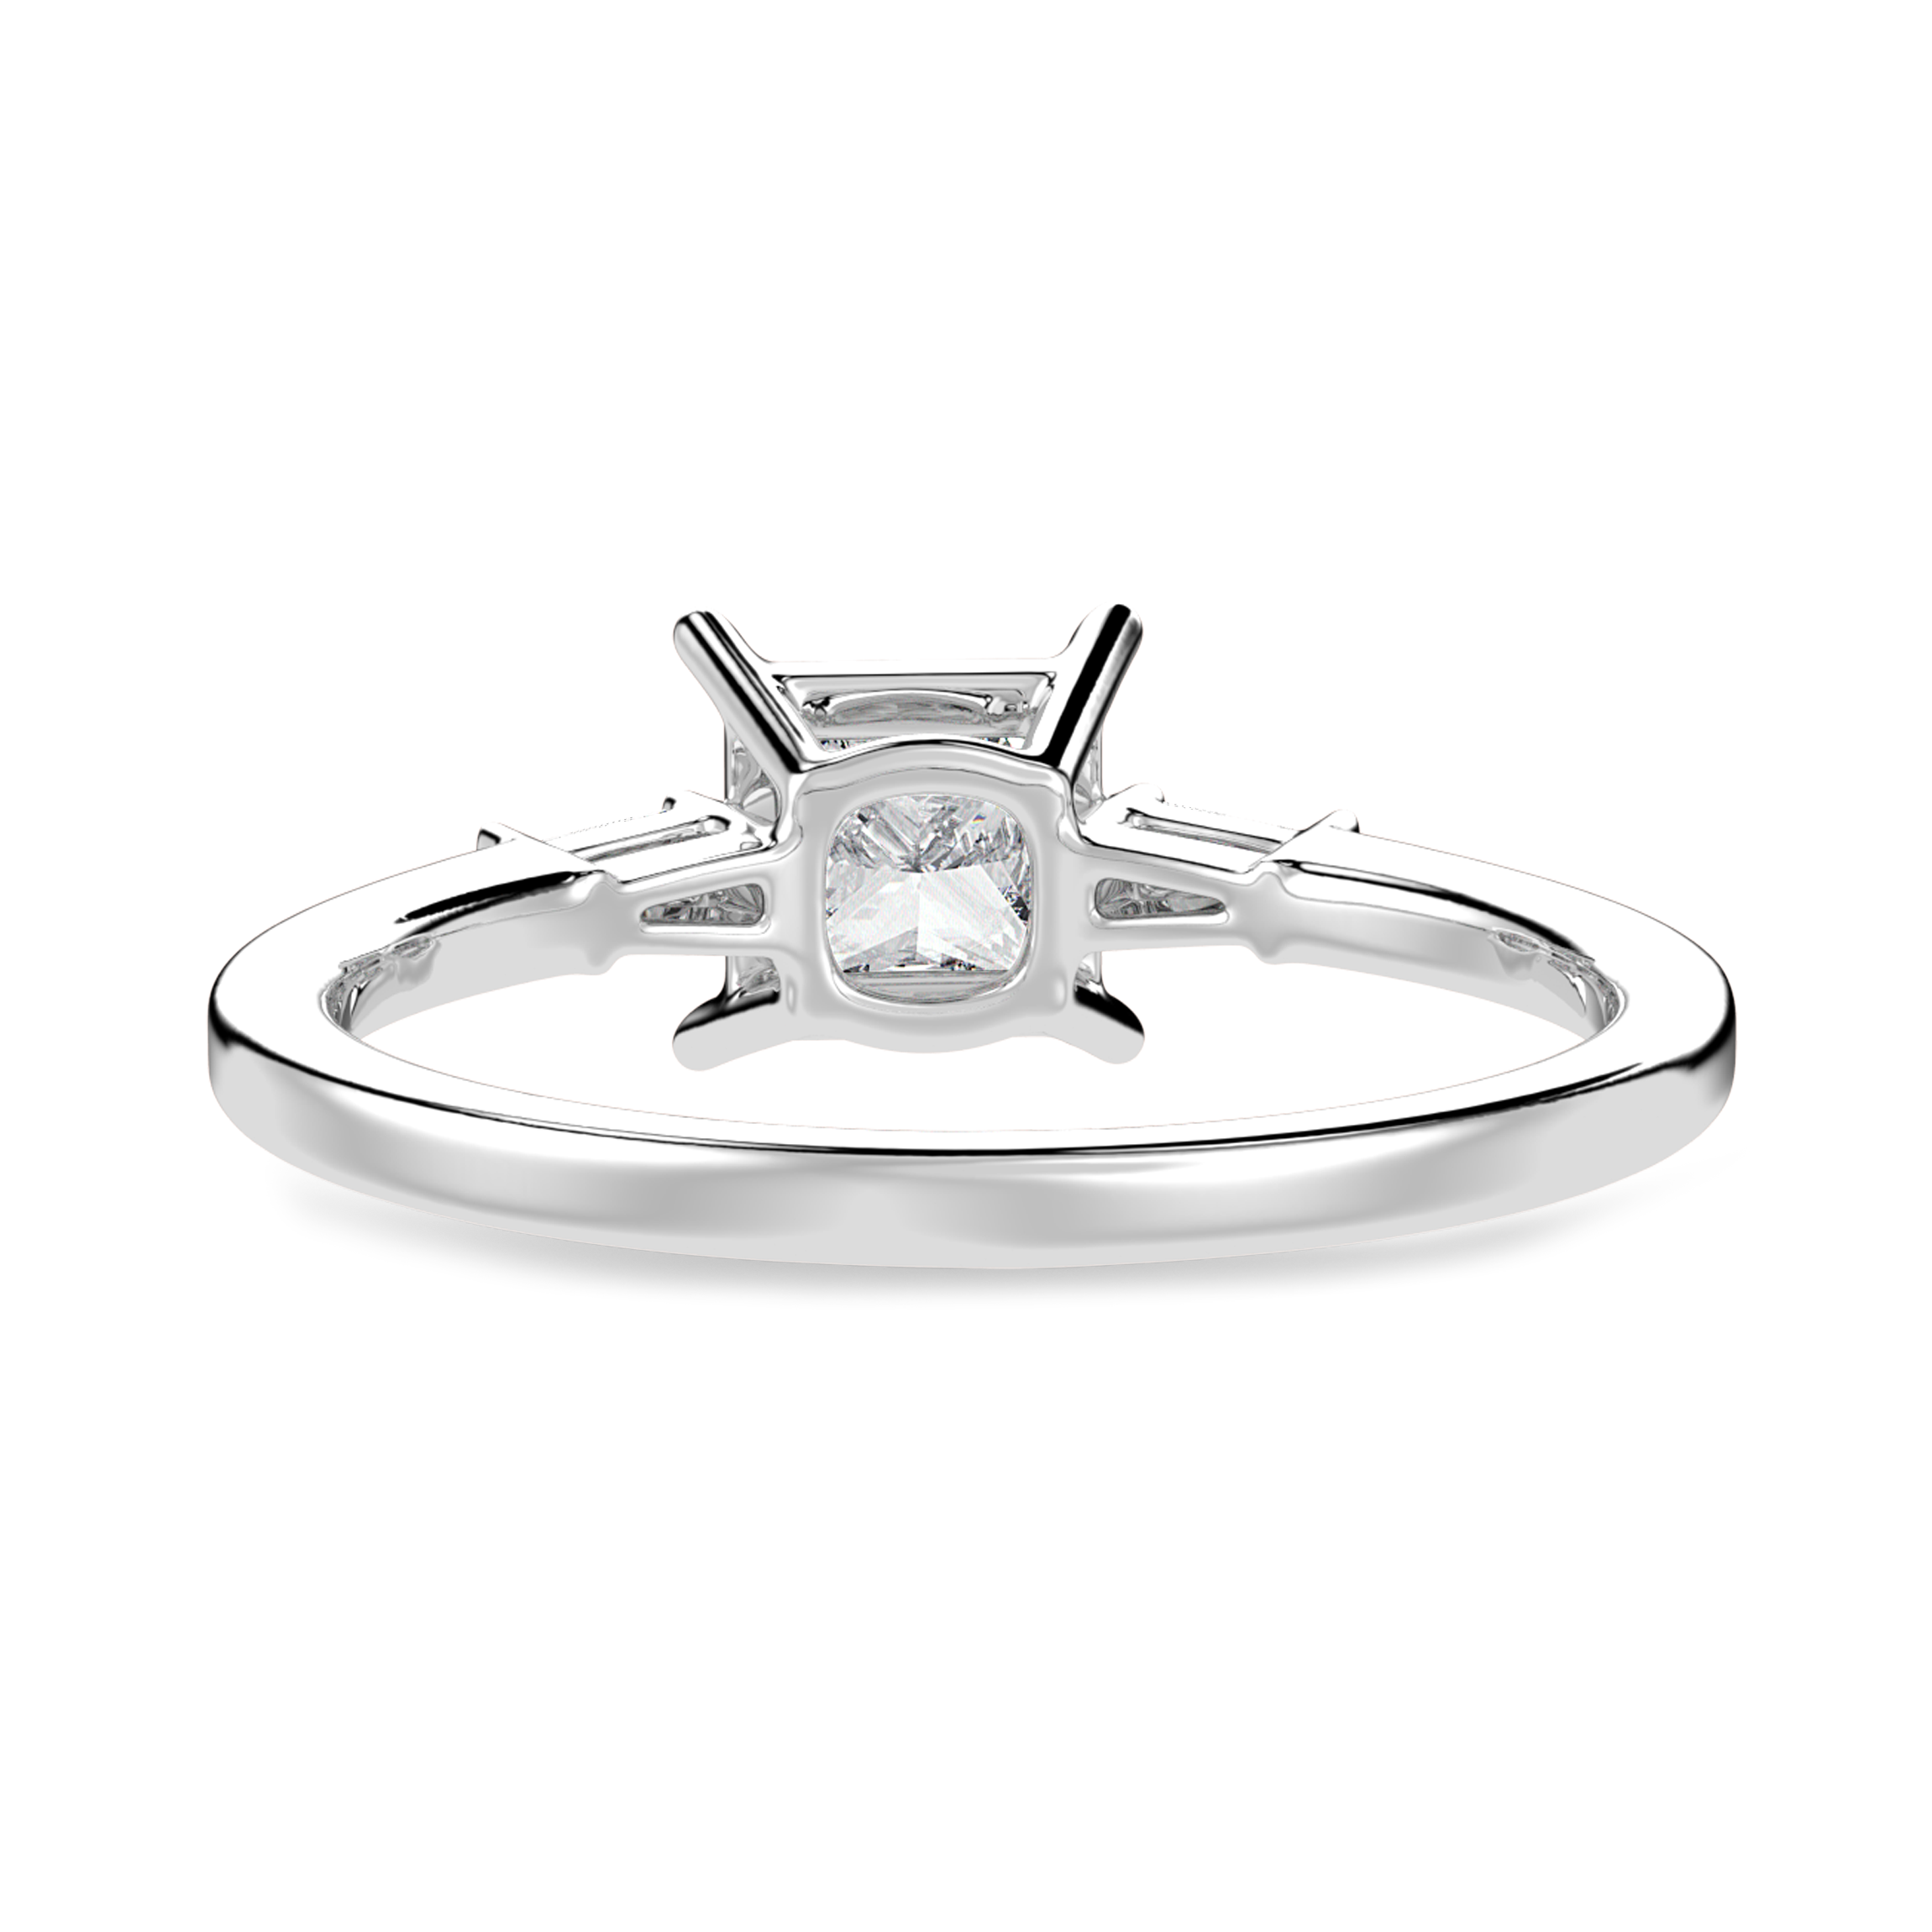 30-Pointer Princess Cut Solitaire Baguette Diamond Accents Platinum Ring JL PT 1211   Jewelove.US